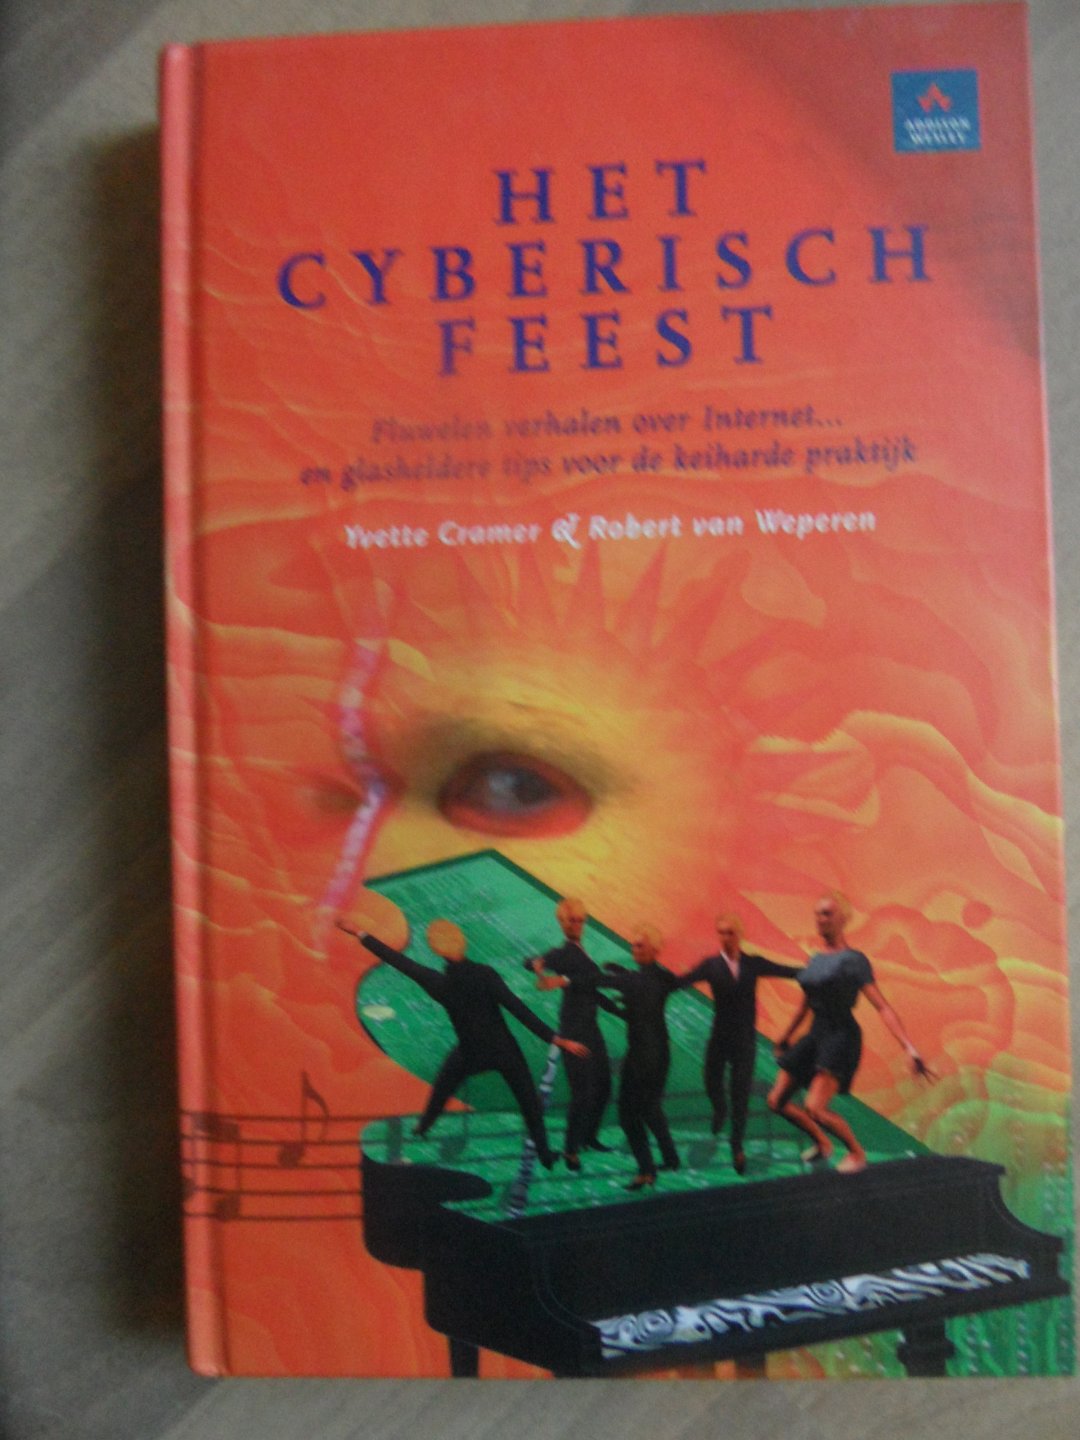 Cramer, Yvette & Weperen, Robert van - Het cyberisch feest. Fluwelen verhalen over Internet? en glasheldere tips voor de keiharde praktijk